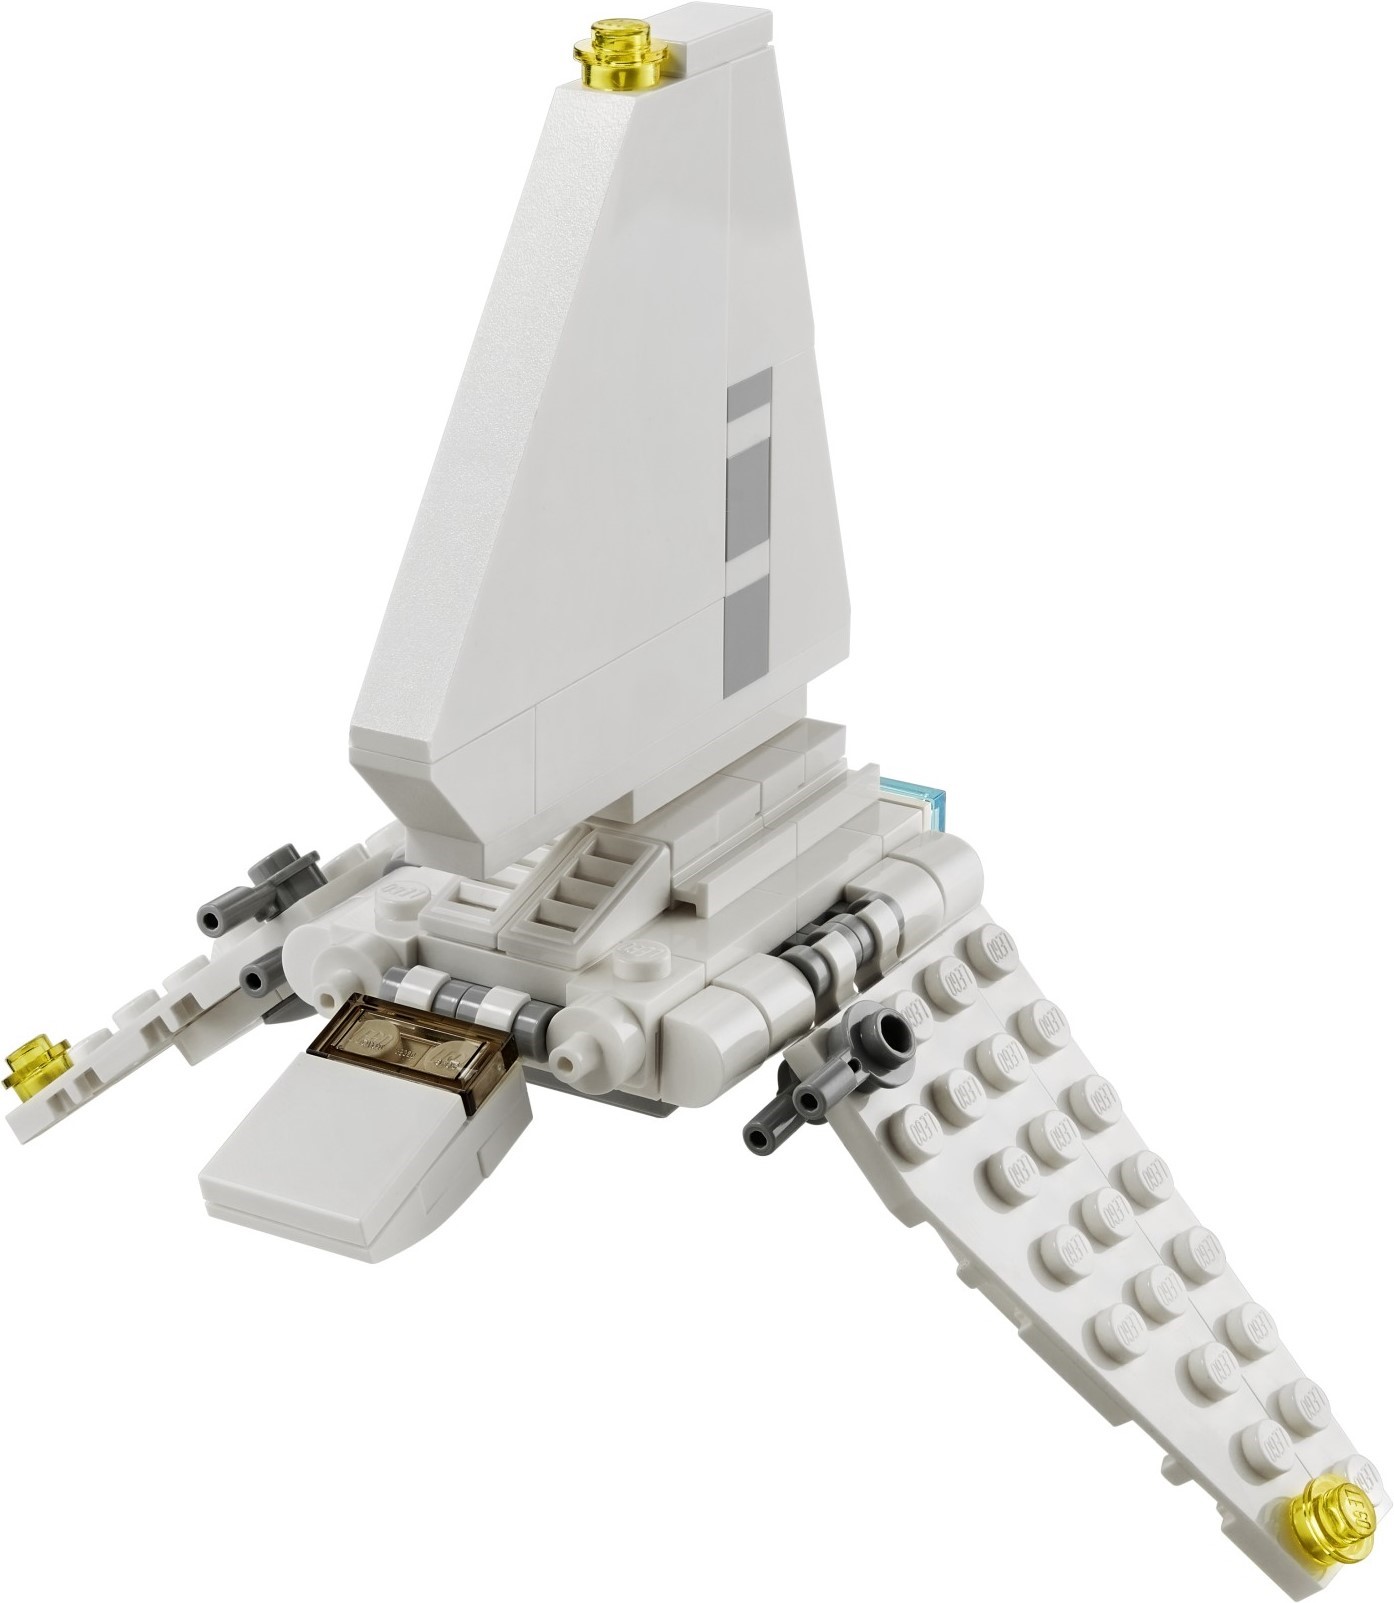 LEGO Star Wars 2021 |